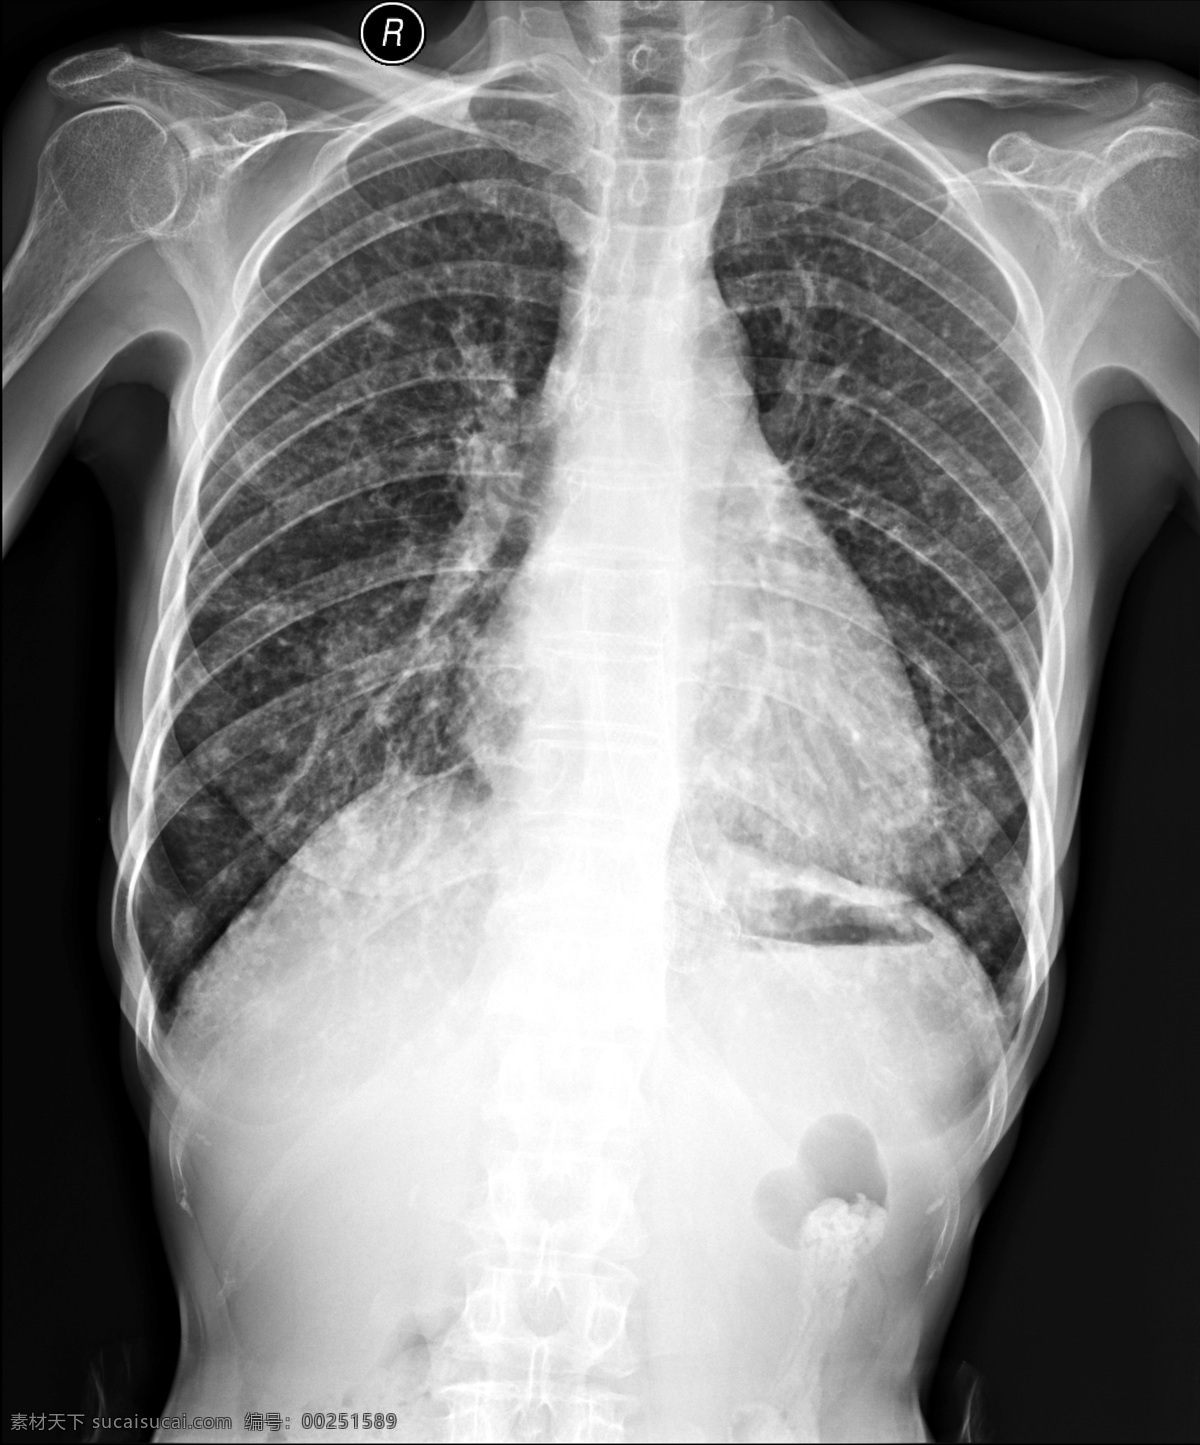 x线胸部拍片 x线 拍片 胸片 胸部 肋骨 心肺 x线照片 支架 关节 骨质 医疗 医药 医学 钢板内固定器 医疗护理 现代科技